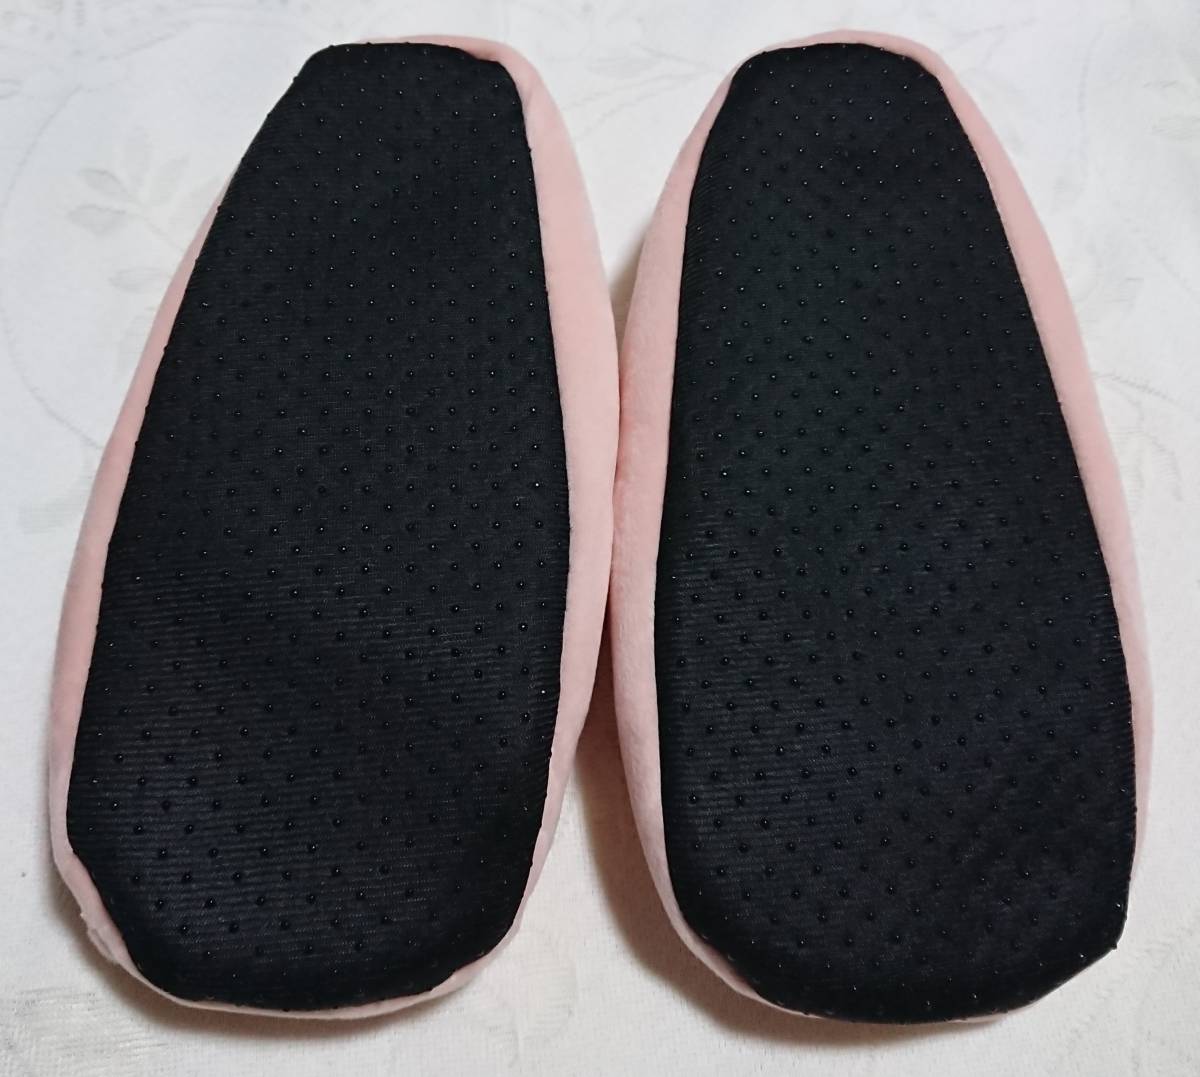  включая доставку kou авторучка Chan внутри сторона боа салон обувь тапочки 23cm~25cm розовый новый товар не использовался 